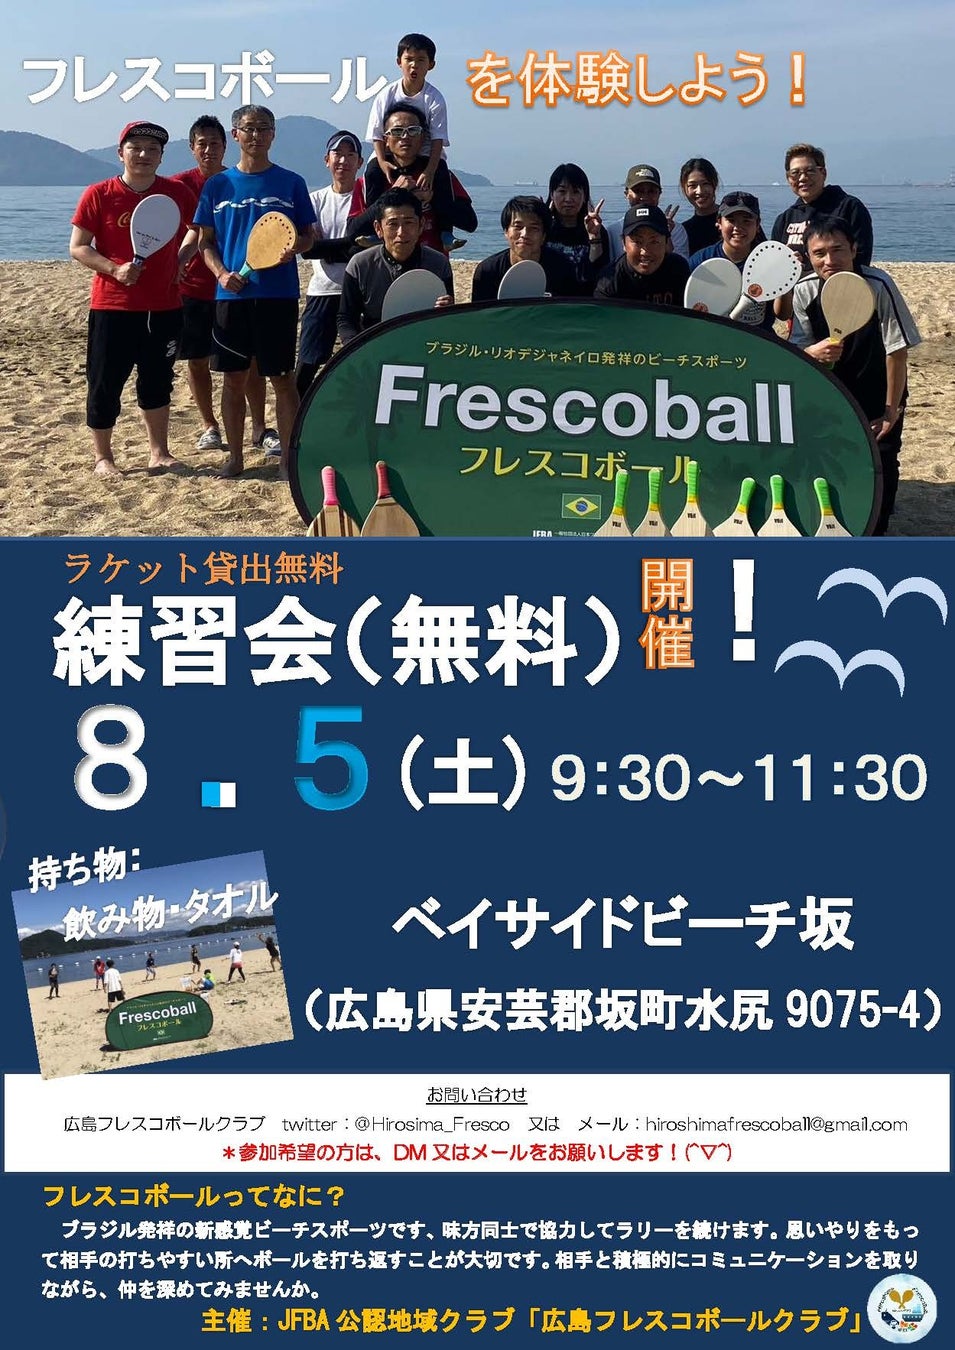 日本フレスコボール協会（JFBA）、公認地域クラブ「広島フレスコボールクラブ」が7月30日(日)の『豊かな海づくり大会』にてフレスコボール体験会を実施。のサブ画像3